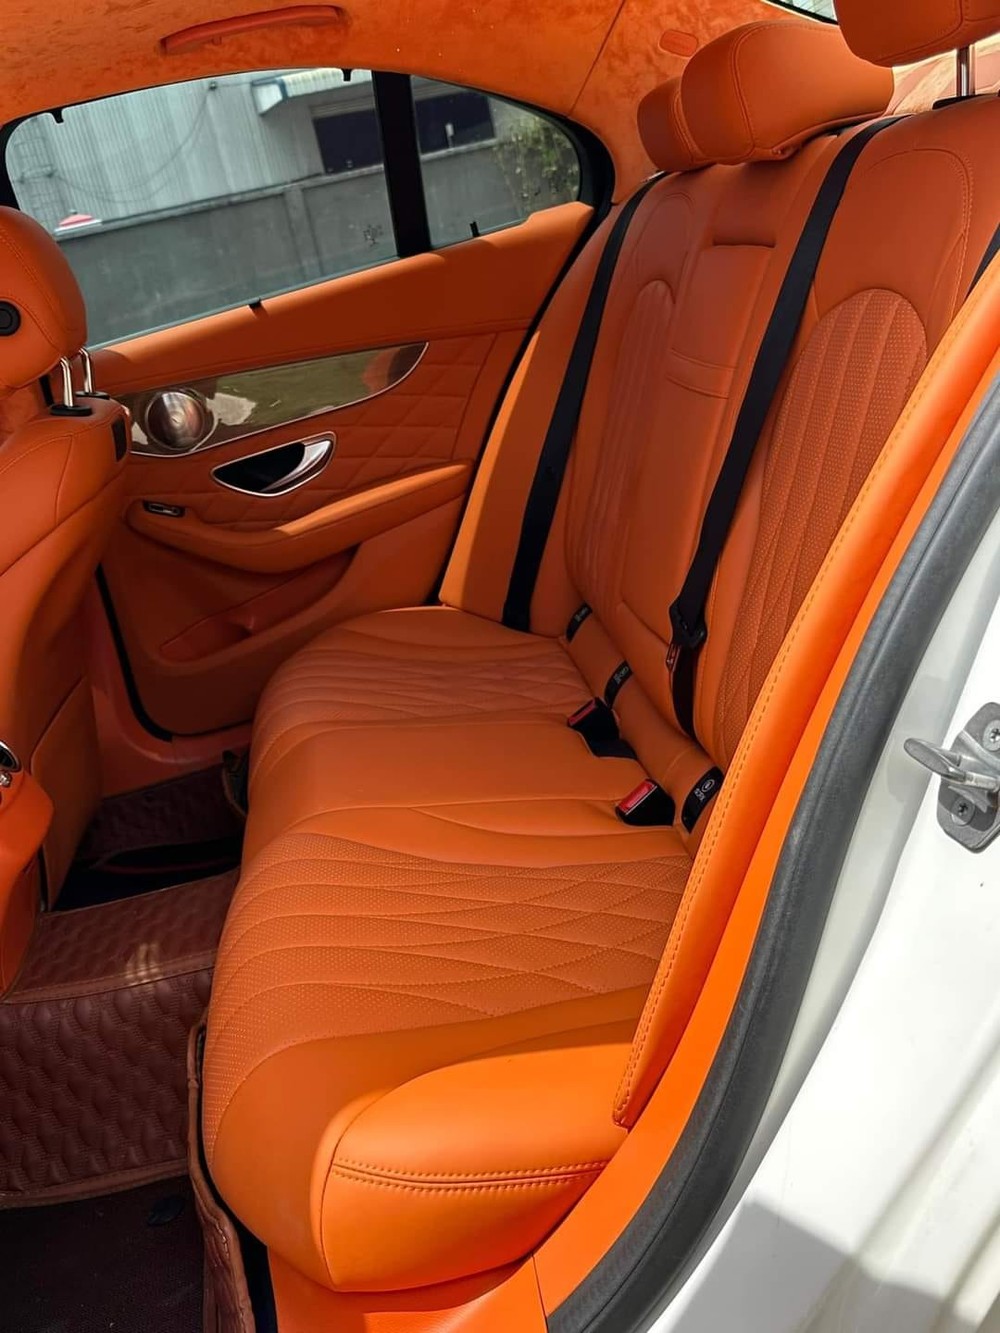 Mercedes C 250 độ kỳ công bán lại chưa đến 900 triệu, dân tình nhận xét: ‘Nhìn nội thất hết muốn lên xe’ - Ảnh 4.